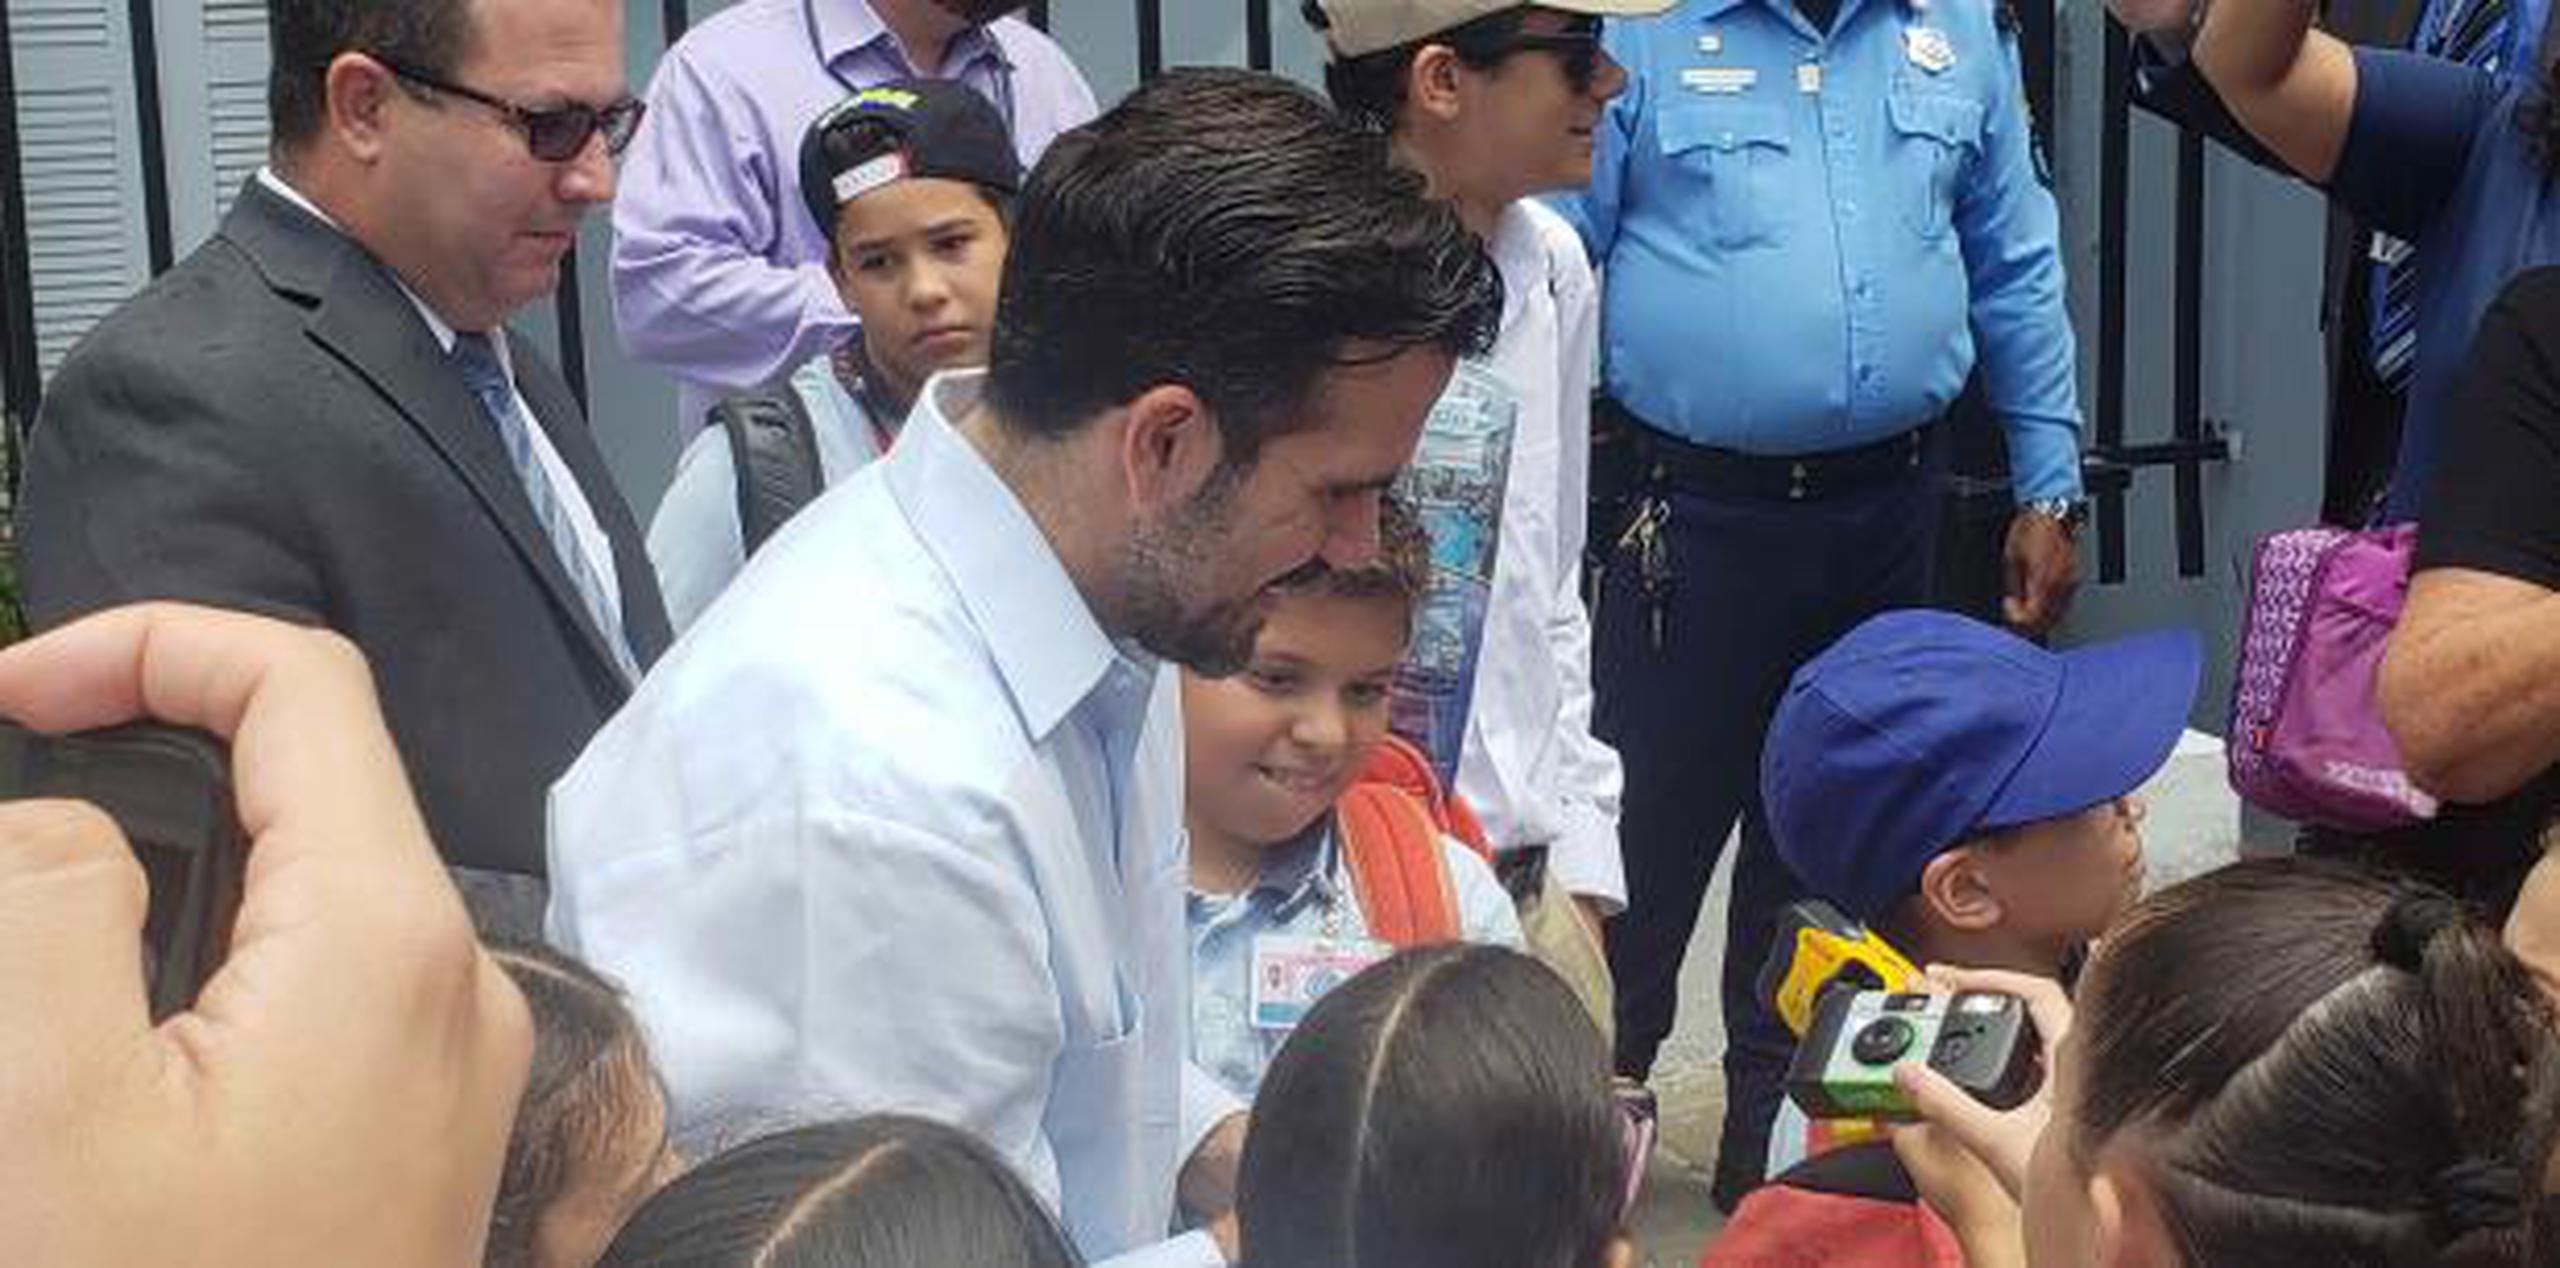 Los niños se encontraron con el gobernador frente a la Fortaleza. (Suministrada)